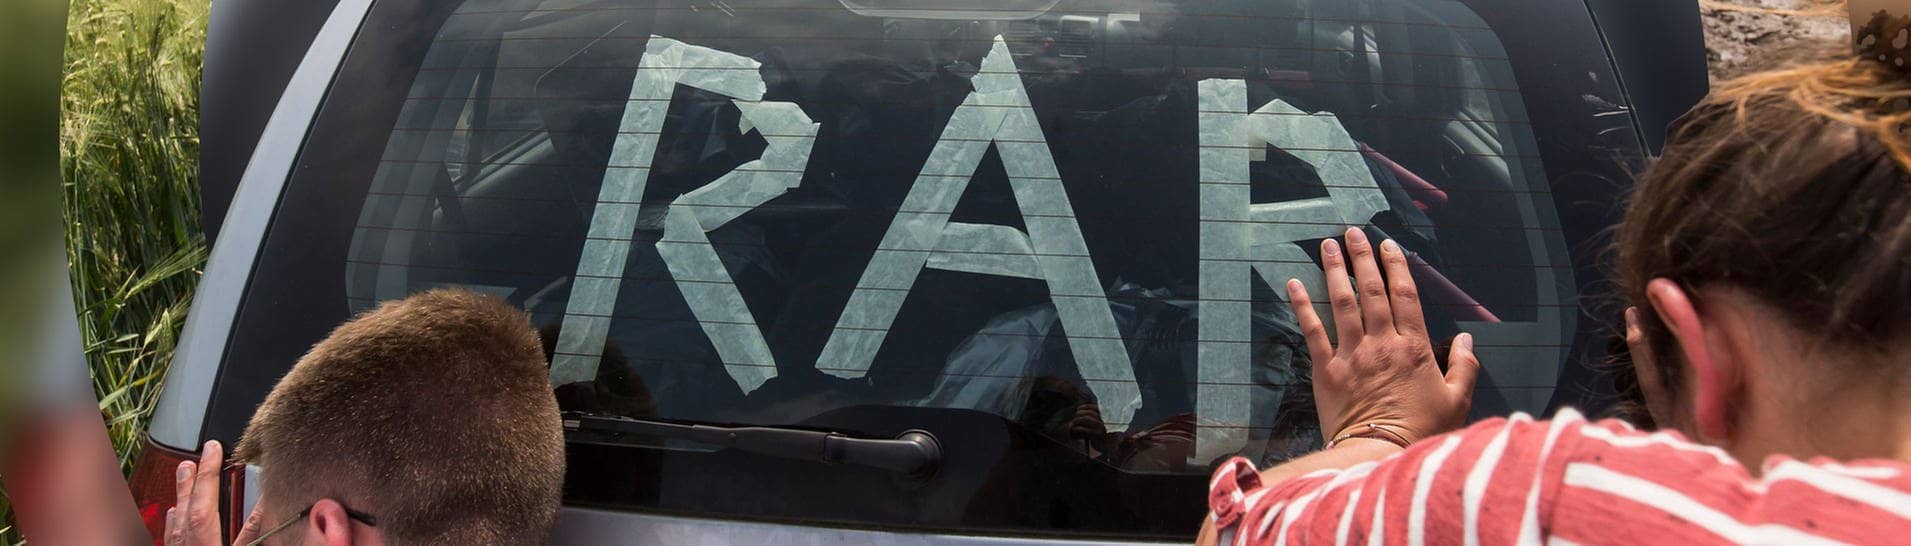 Rock am Ring: Zwei Menschen schieben ein Auto mit dem Schriftzug „RaR“. (Foto: picture-alliance / Reportdienste, picture alliance / POP-EYE | POP-EYE / Ben Kriemann|Bearbeitung: SWR3)